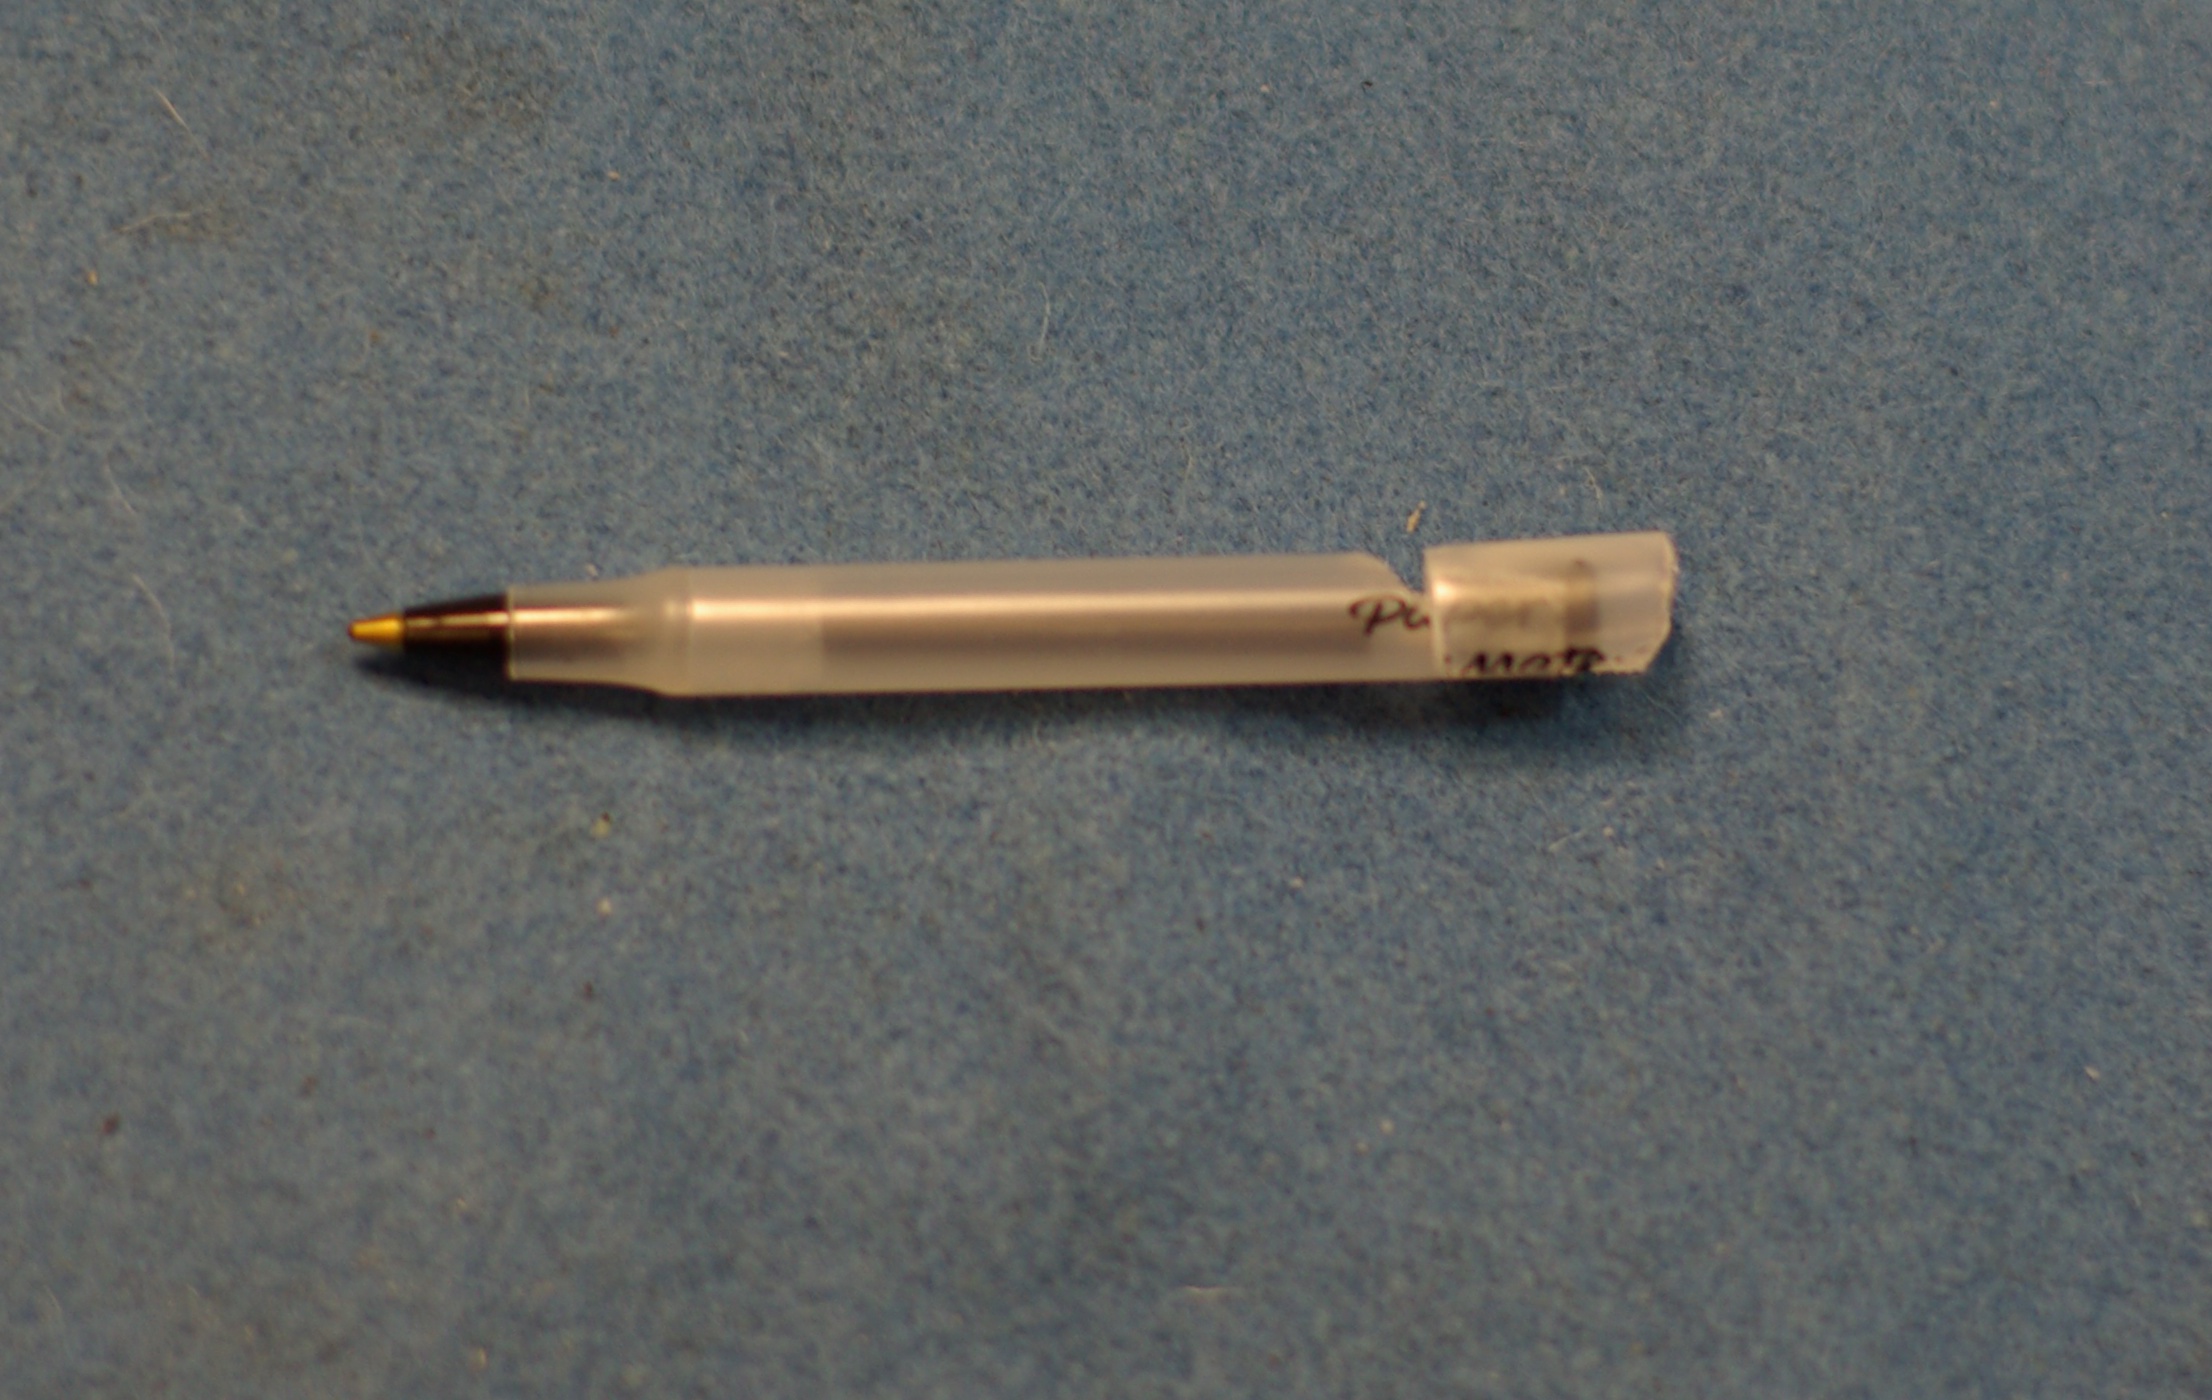 Transform a ballpoint pen into a survival whistle mini-pen